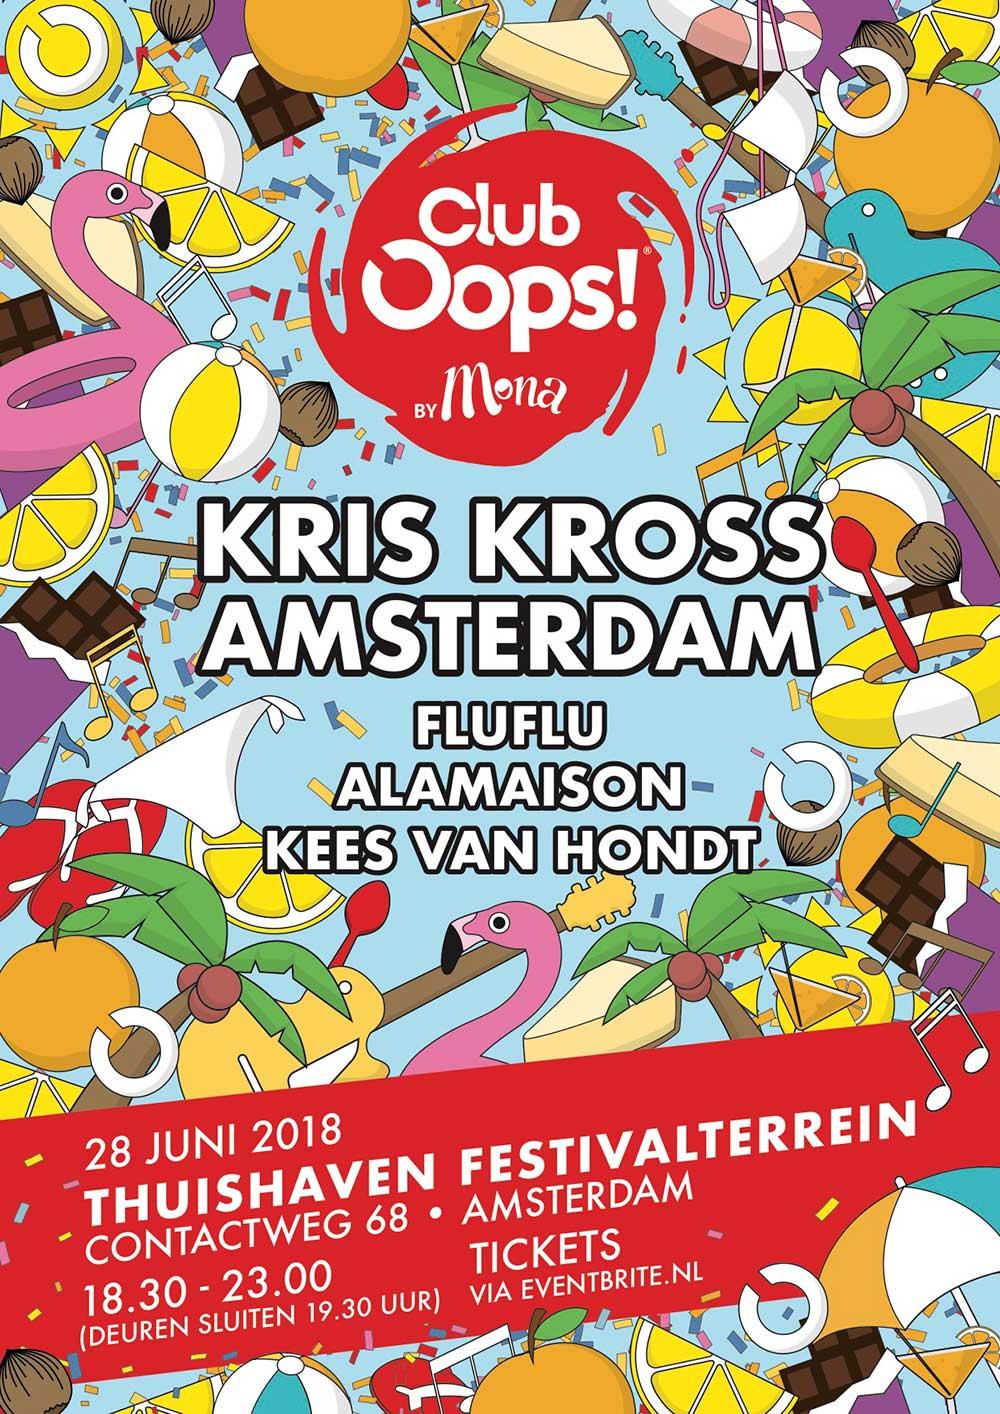 Trek in een chaotisch feestje? En is de avond van 28 juni nog leeg in je agenda? In Thuishaven Amsterdam opent Club Oops! by Mona haar deuren.